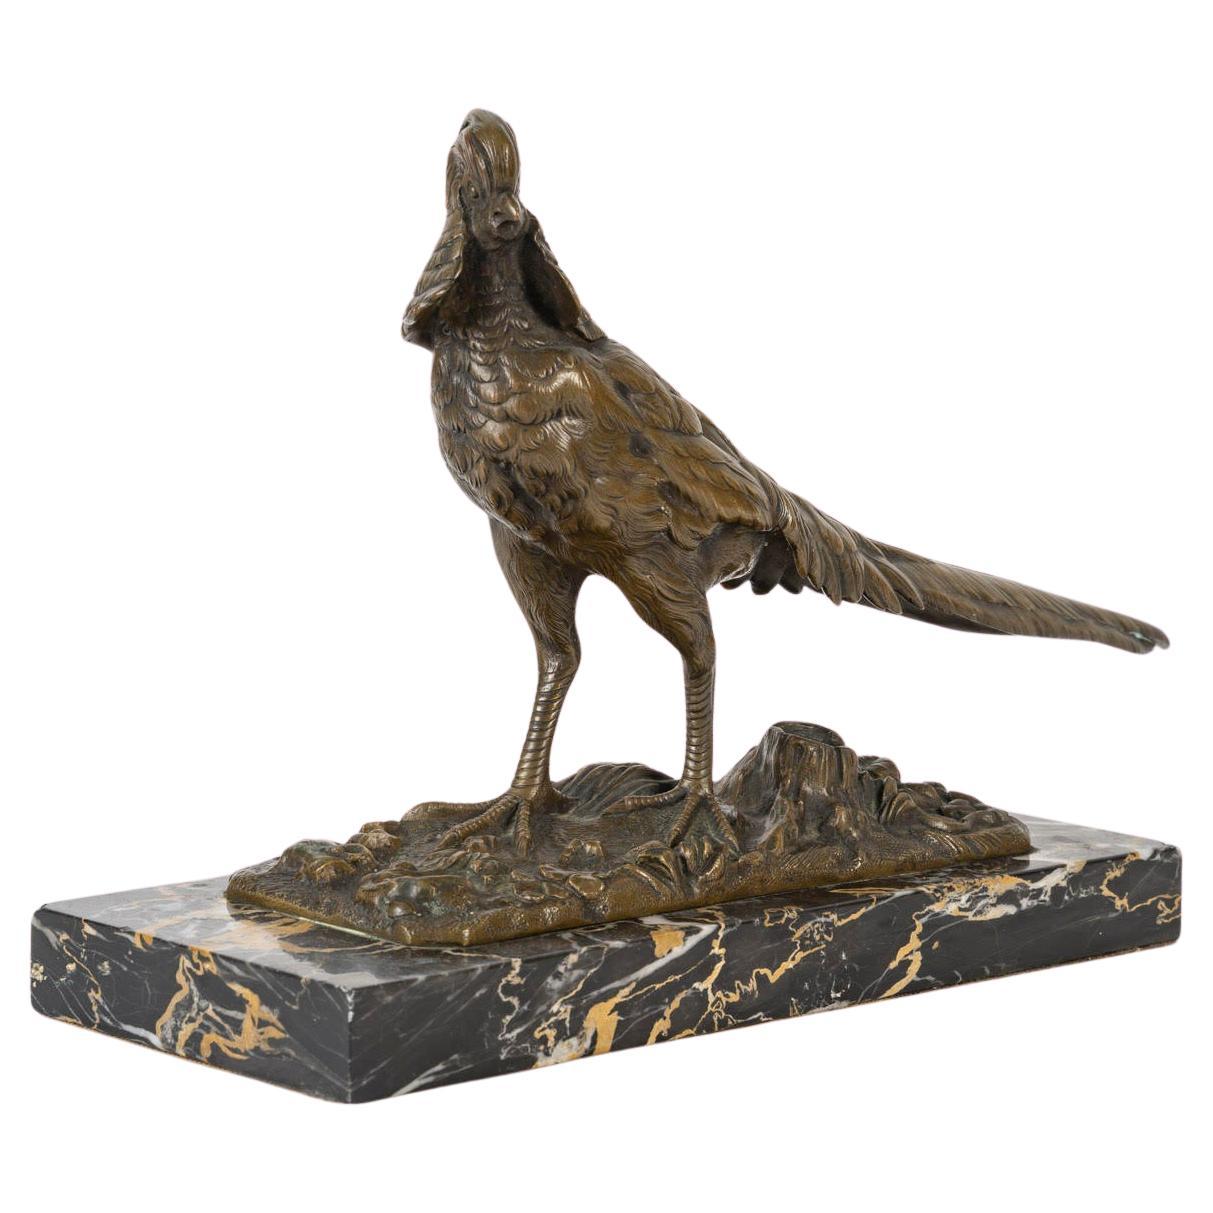 Skulptur aus patinierter Bronze, Tierstatue einer Fasanen repräsentiert, 1920-1930.